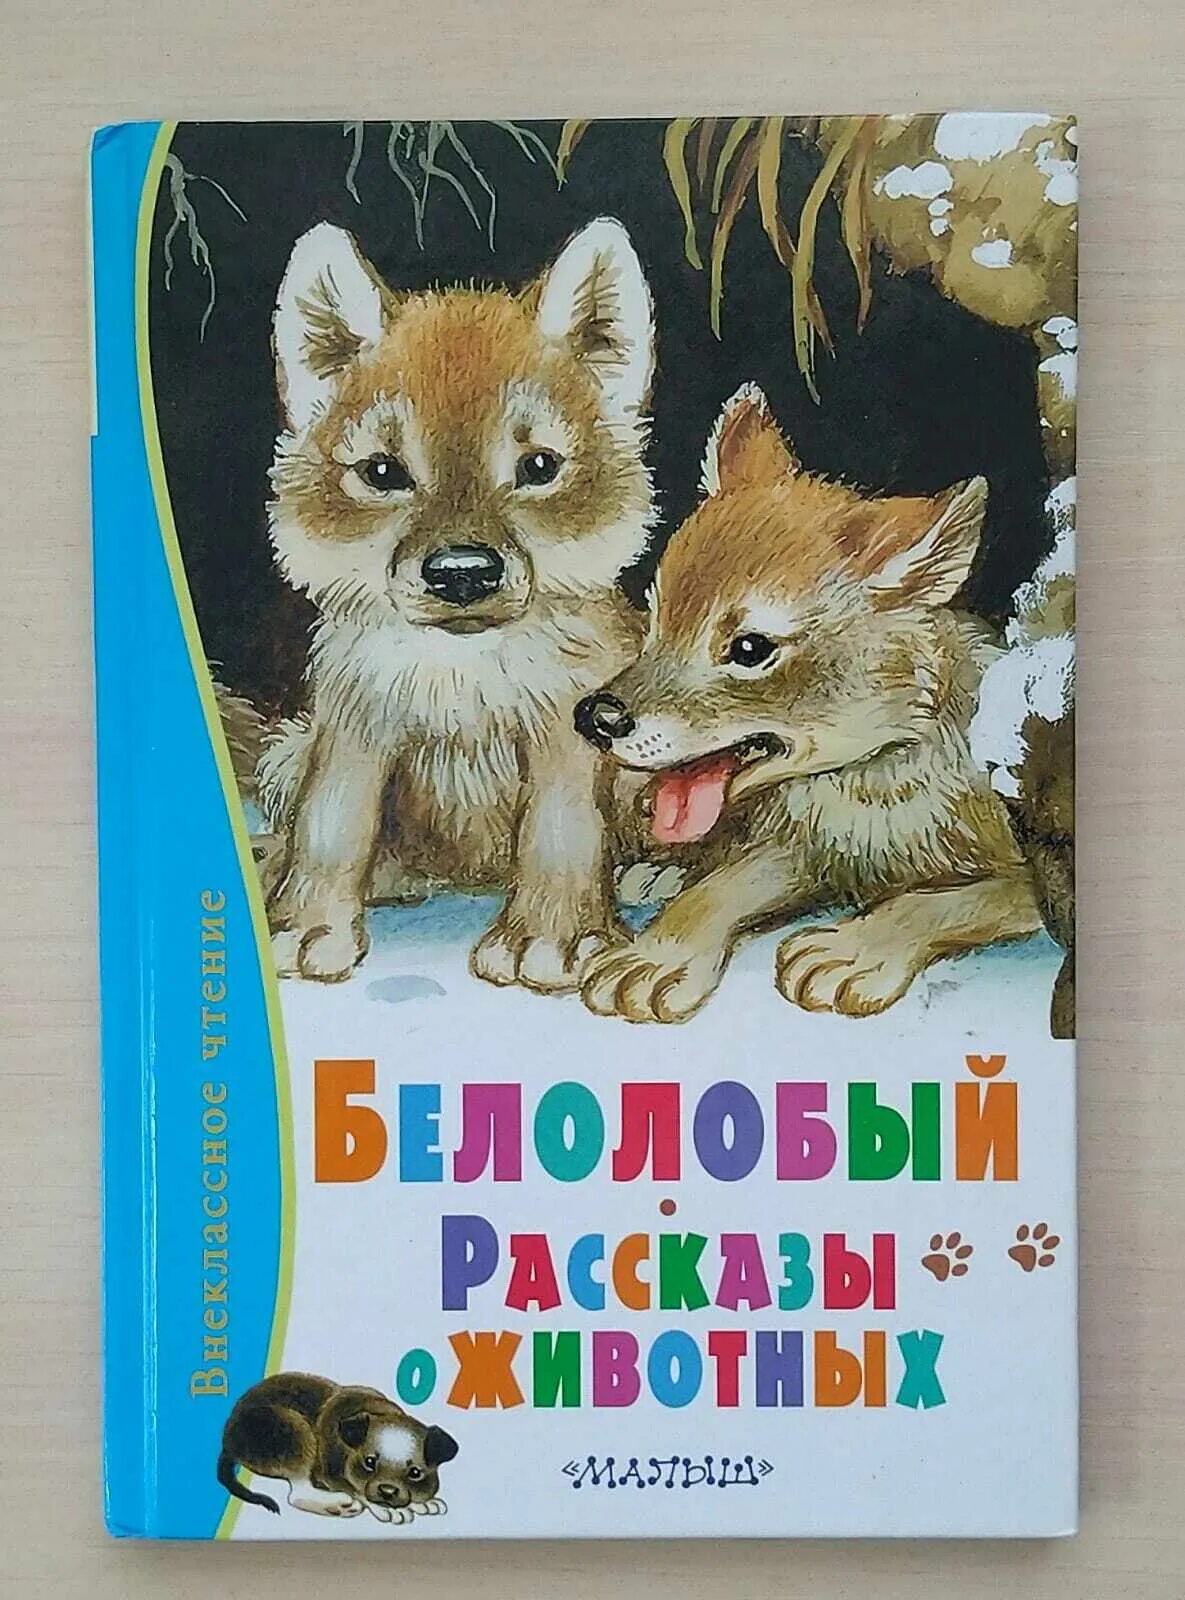 Произведения о животных. Детские книги о животных. Белолобый. Белолобый рассказы о животных.